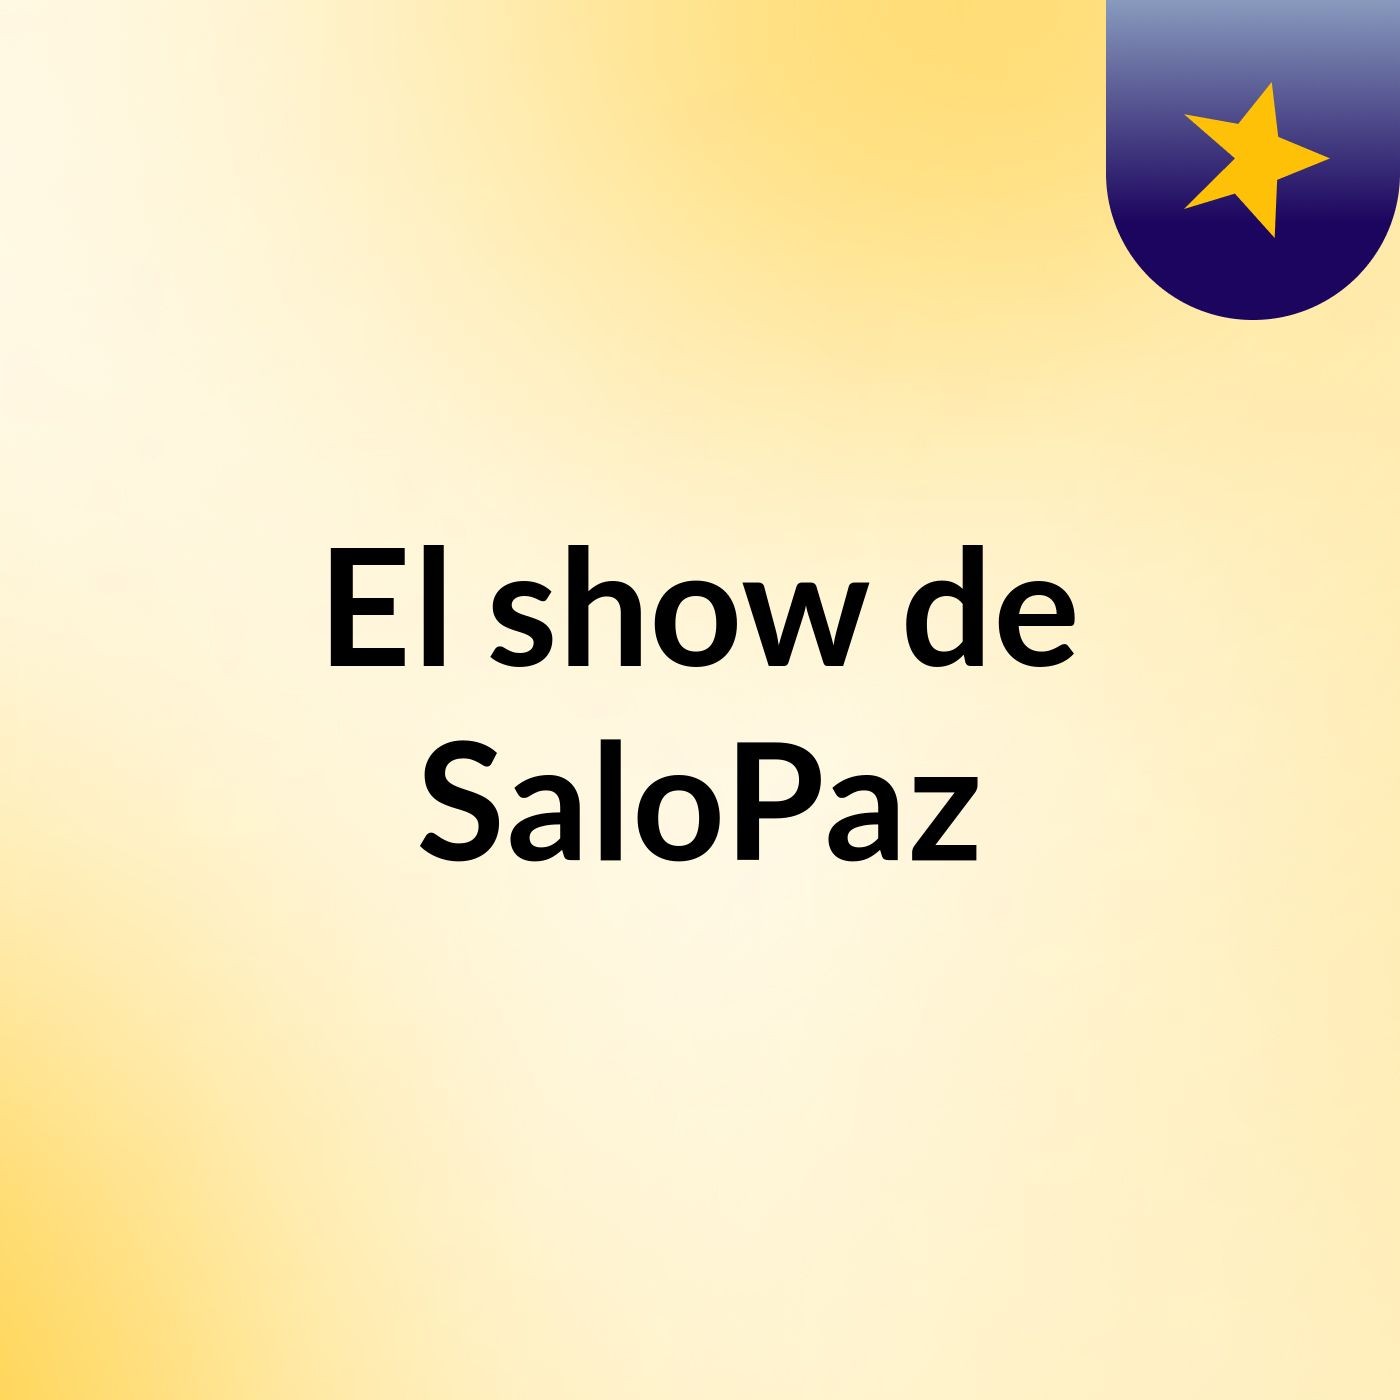 El show de SaloPaz